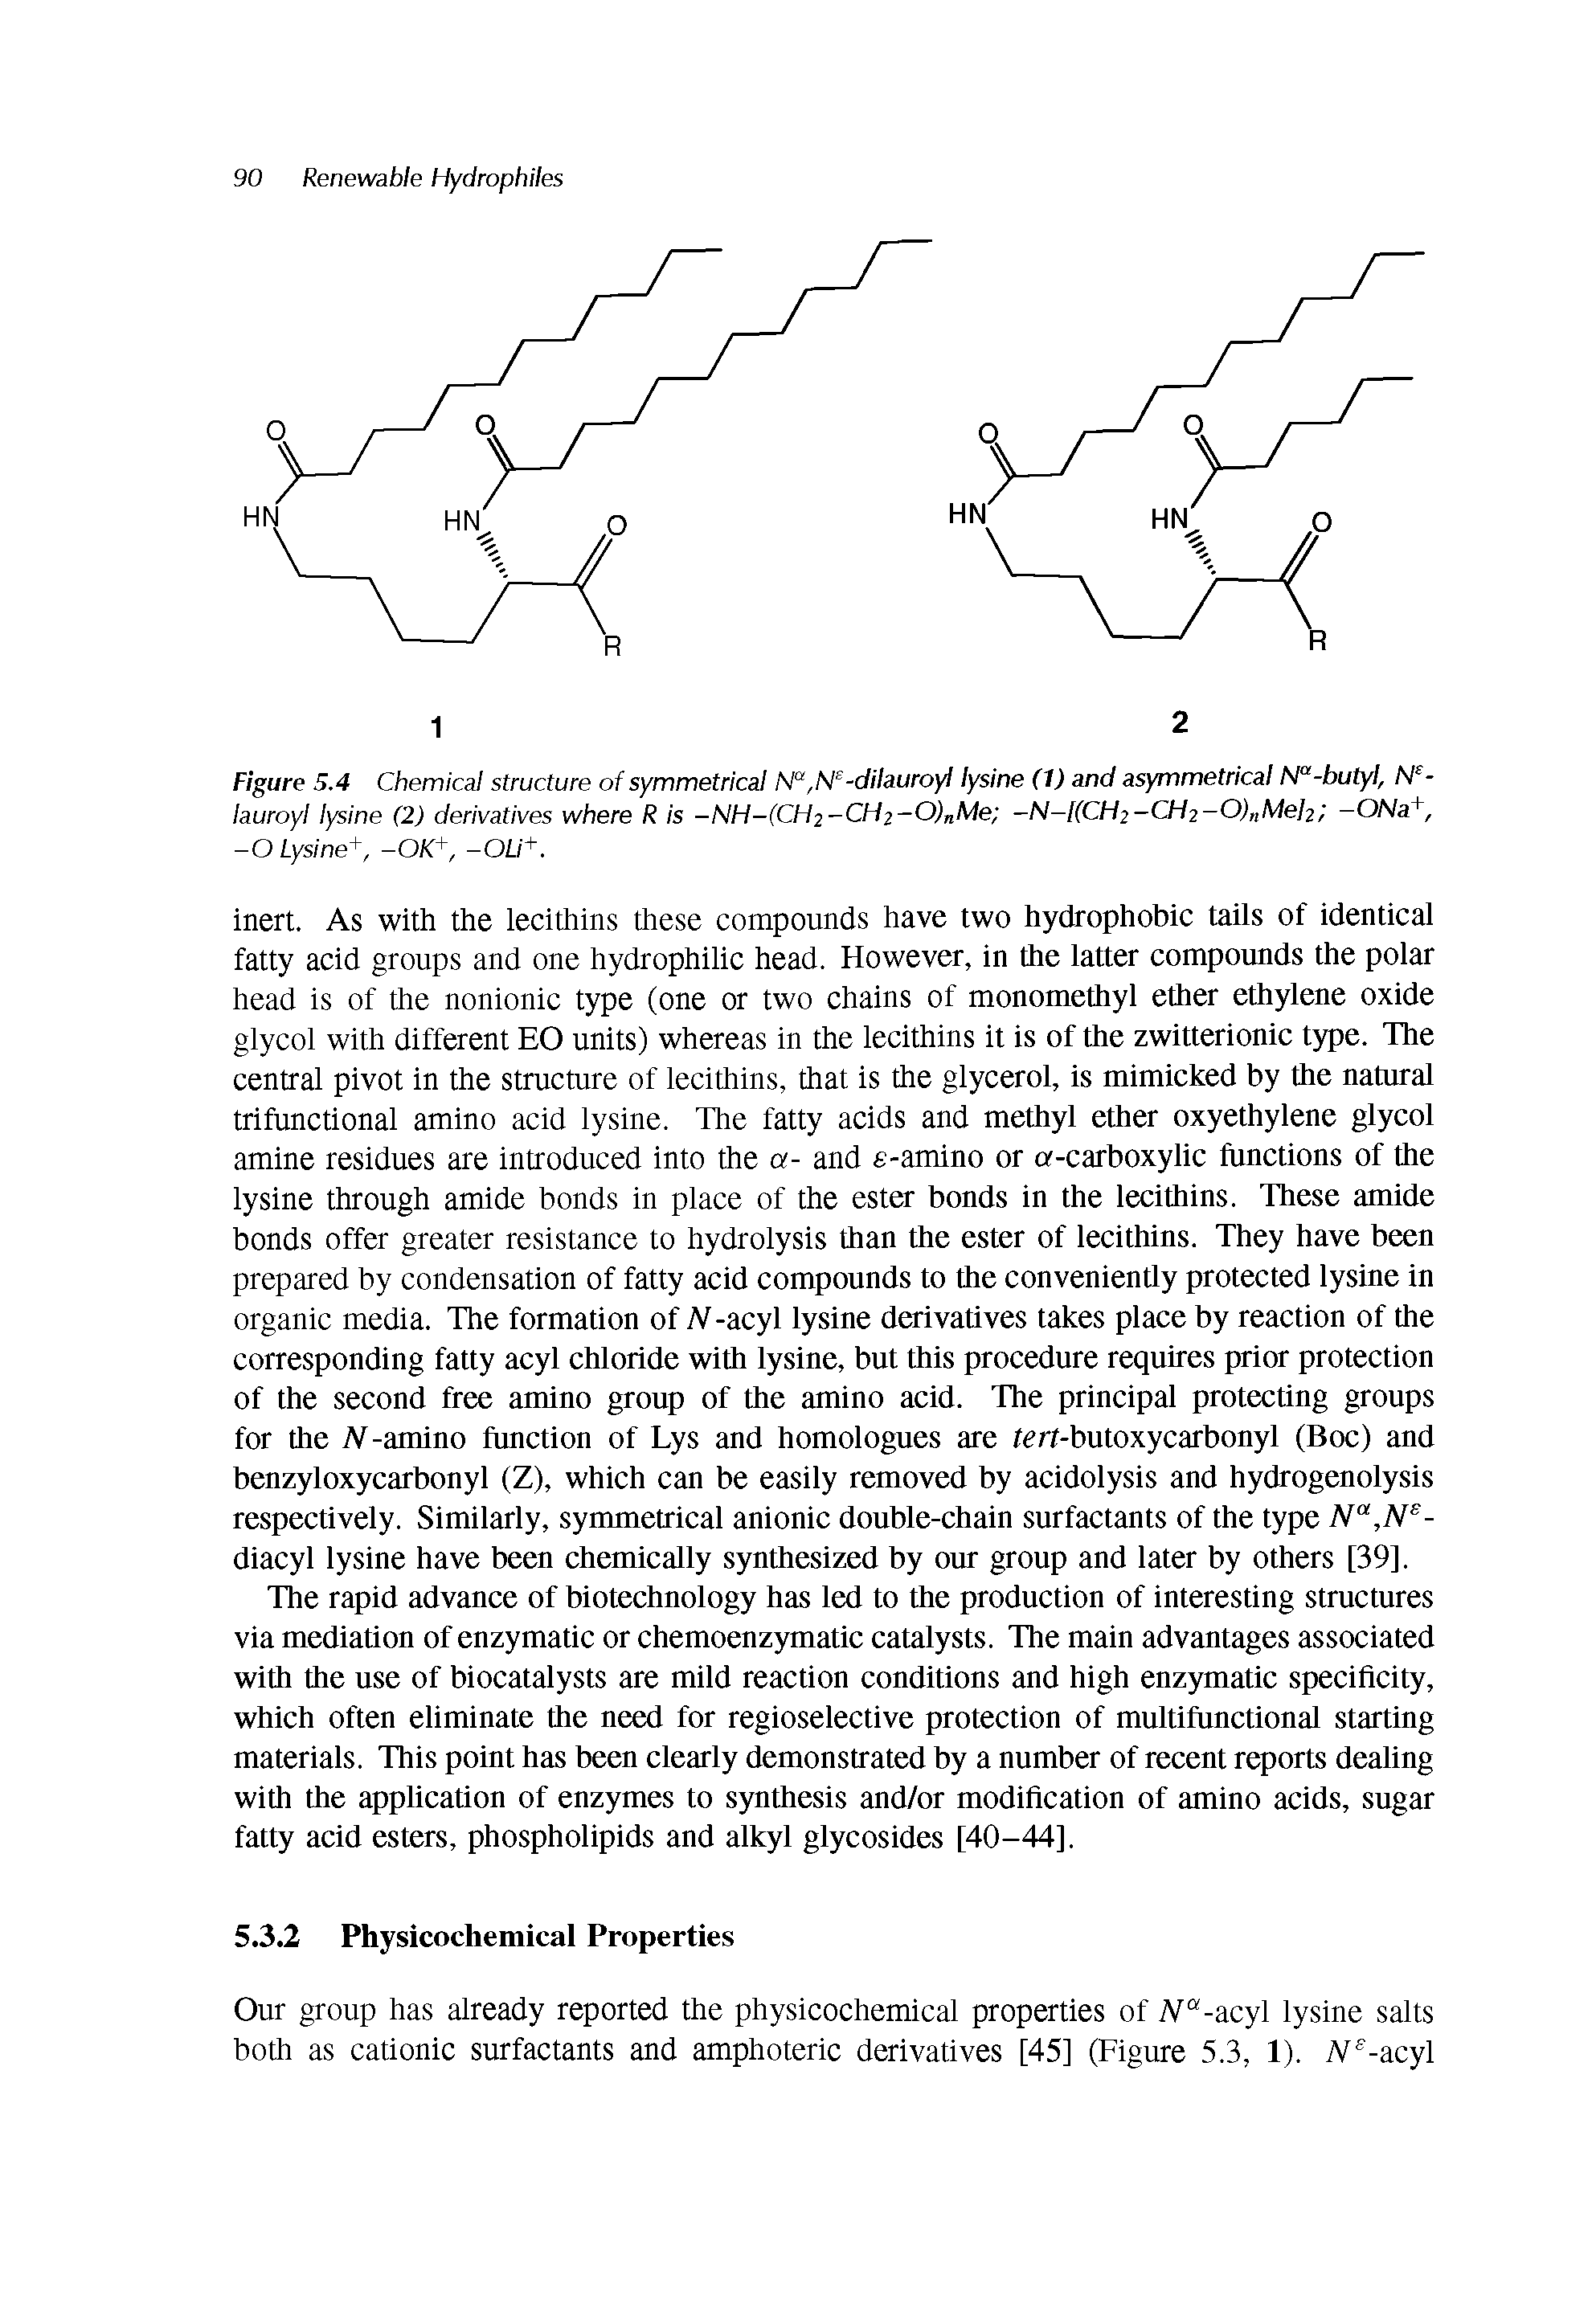 Figure 5.4 Chemical structure of symmetrical N ,N -dilauroyl lysine (1) and asymmetrical N -butyl, N -lauroyl lysine (2) derivatives where R is -NH-(CH2 CHz-0)nMe -N-KCHz-CHz-OInMelz -ONa, -O Lysine+, -OK -OU+.